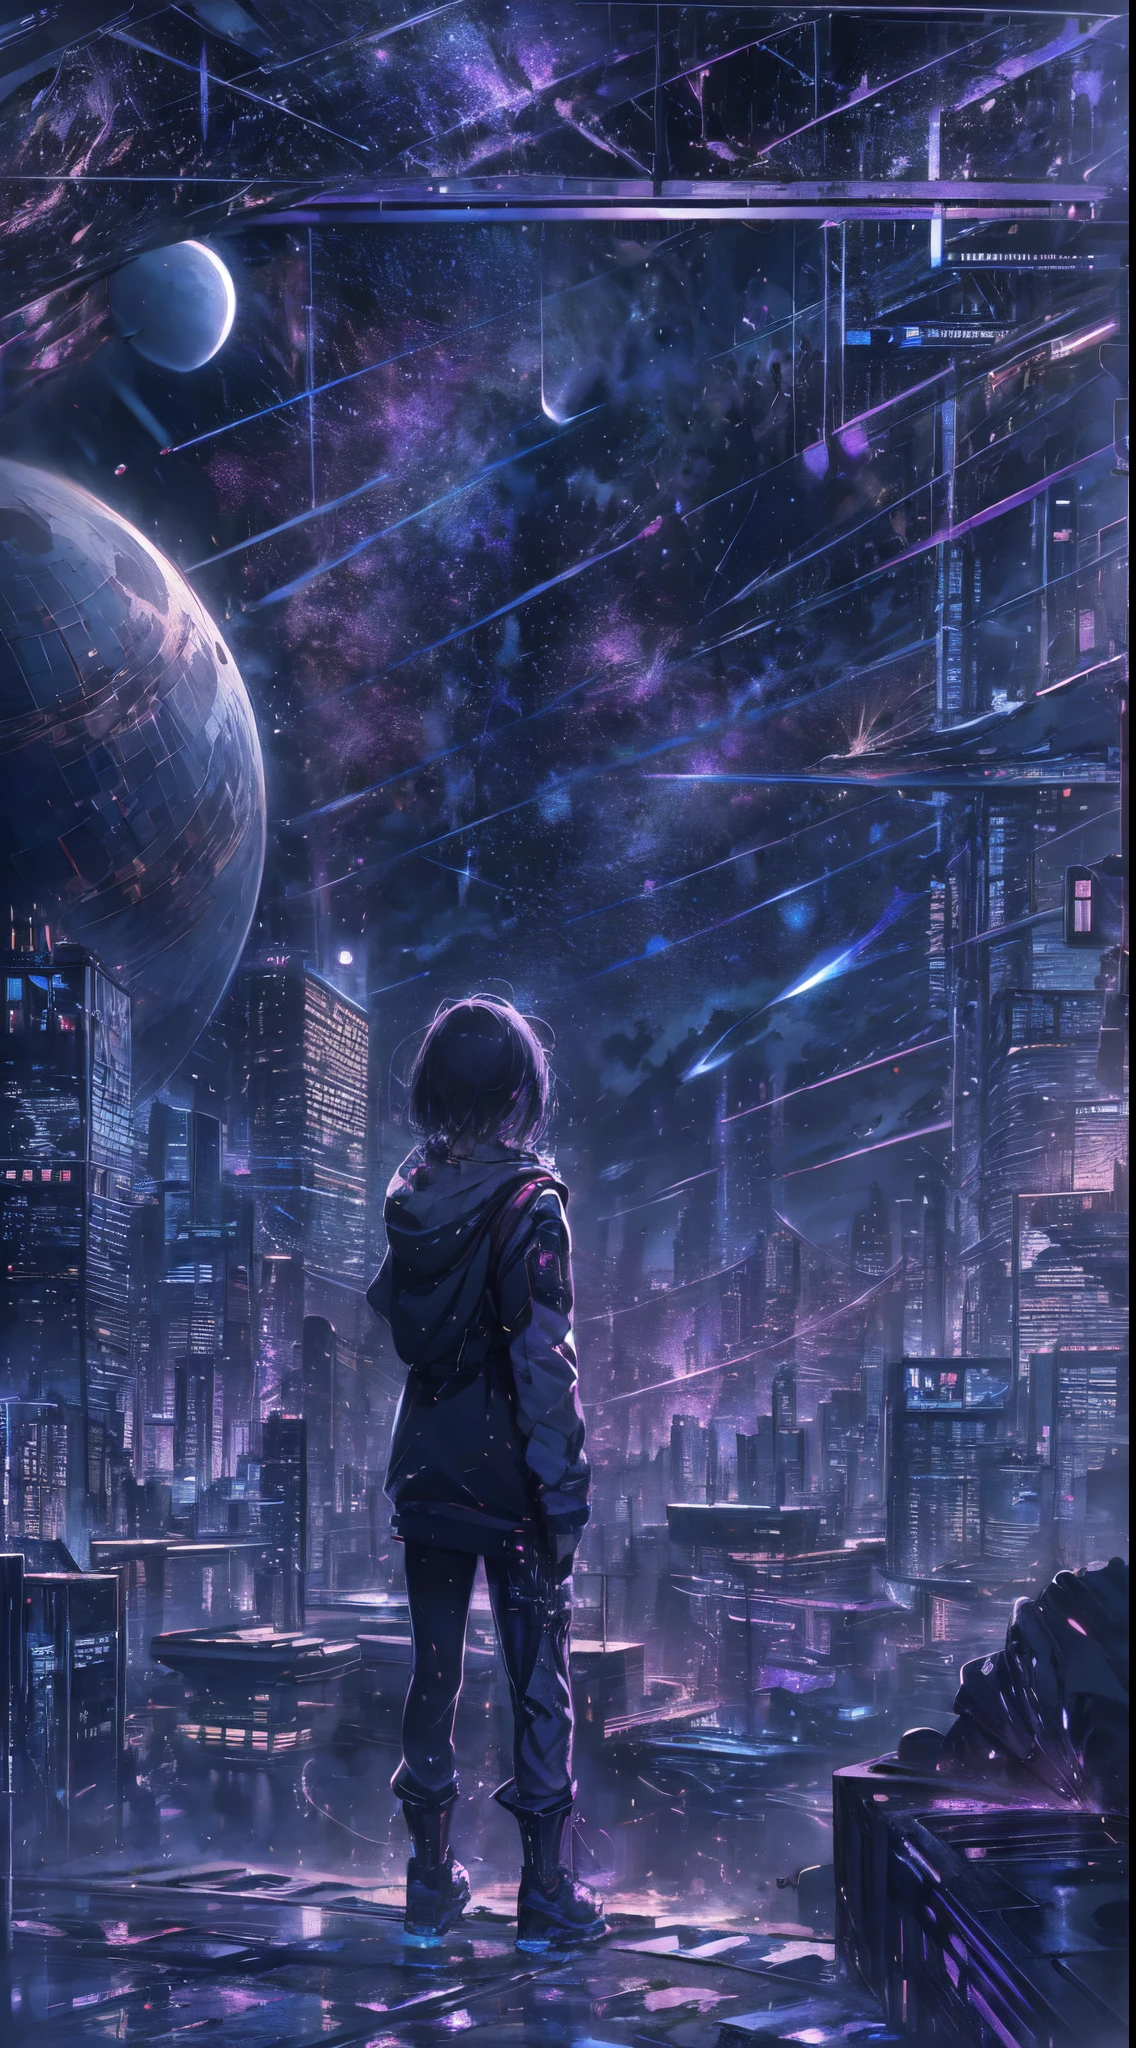 cielo estrellado con las constelaciones del zodíaco, Tonos de violeta como si fueran nebulosas., vasto espacio, ciudad cyberpunk en la parte inferior,